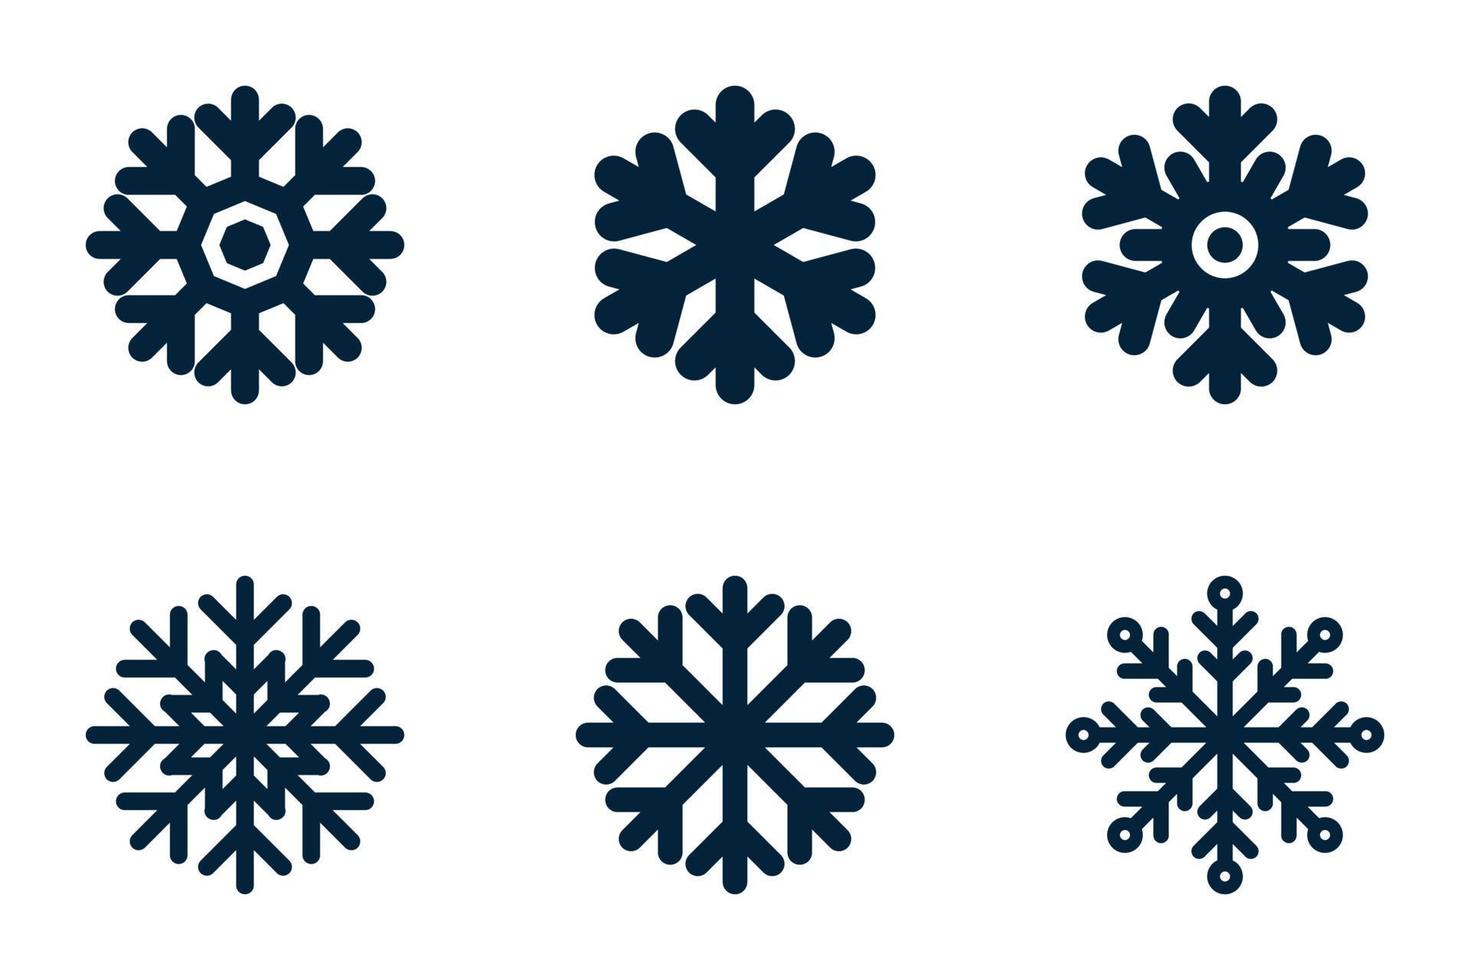 Schneeflocke-Silhouette-Set. Sammlung traditioneller Weihnachts- und Wintersymbole für Logo, Druck, Aufkleber, Emblem, Etikett, Abzeichen, Gruß- und Einladungskartendesign vektor